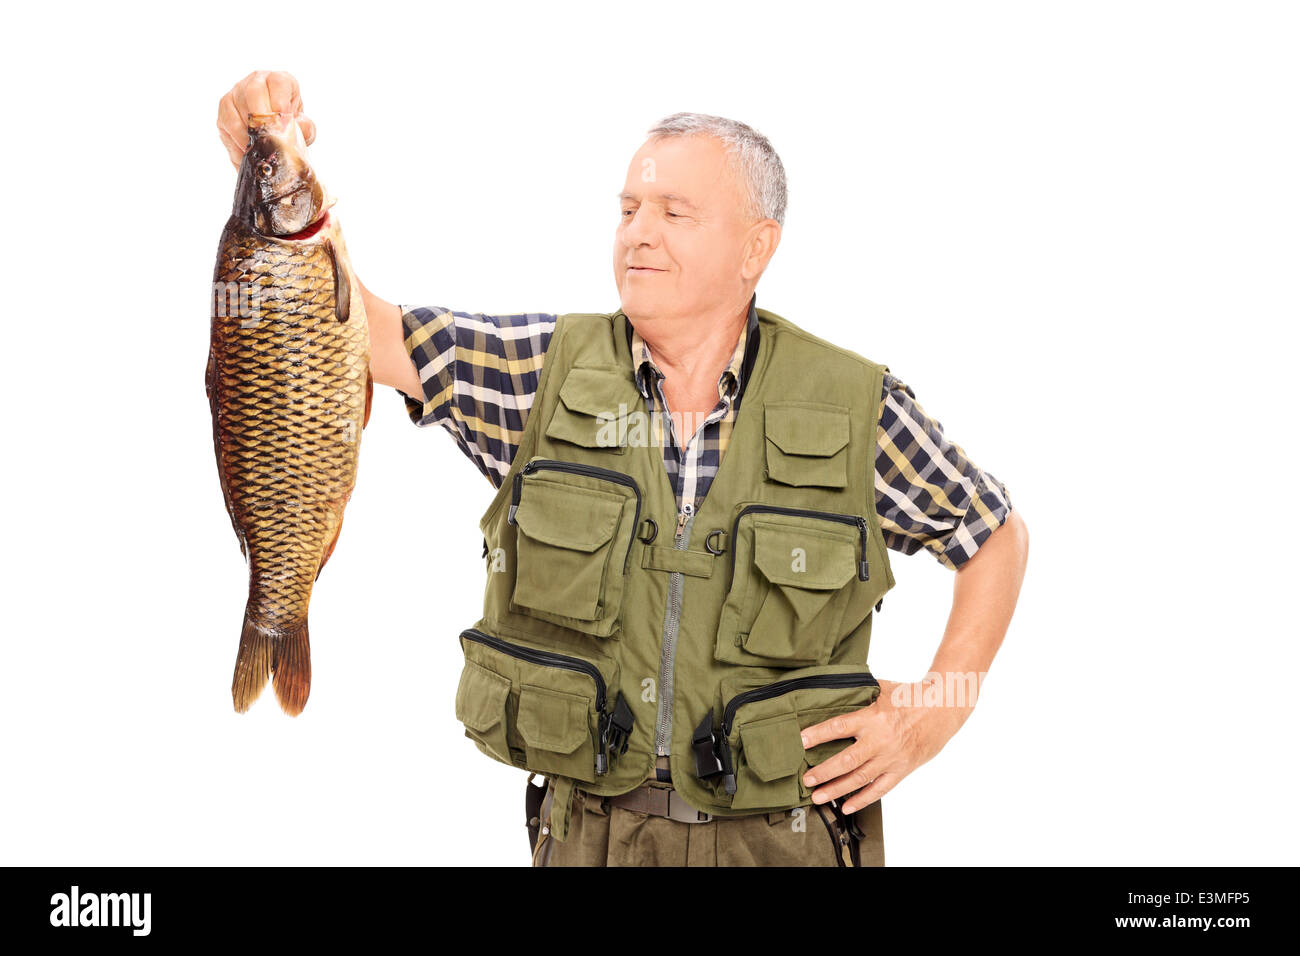 Fier pêcheur mature tenant un gros poisson Banque D'Images